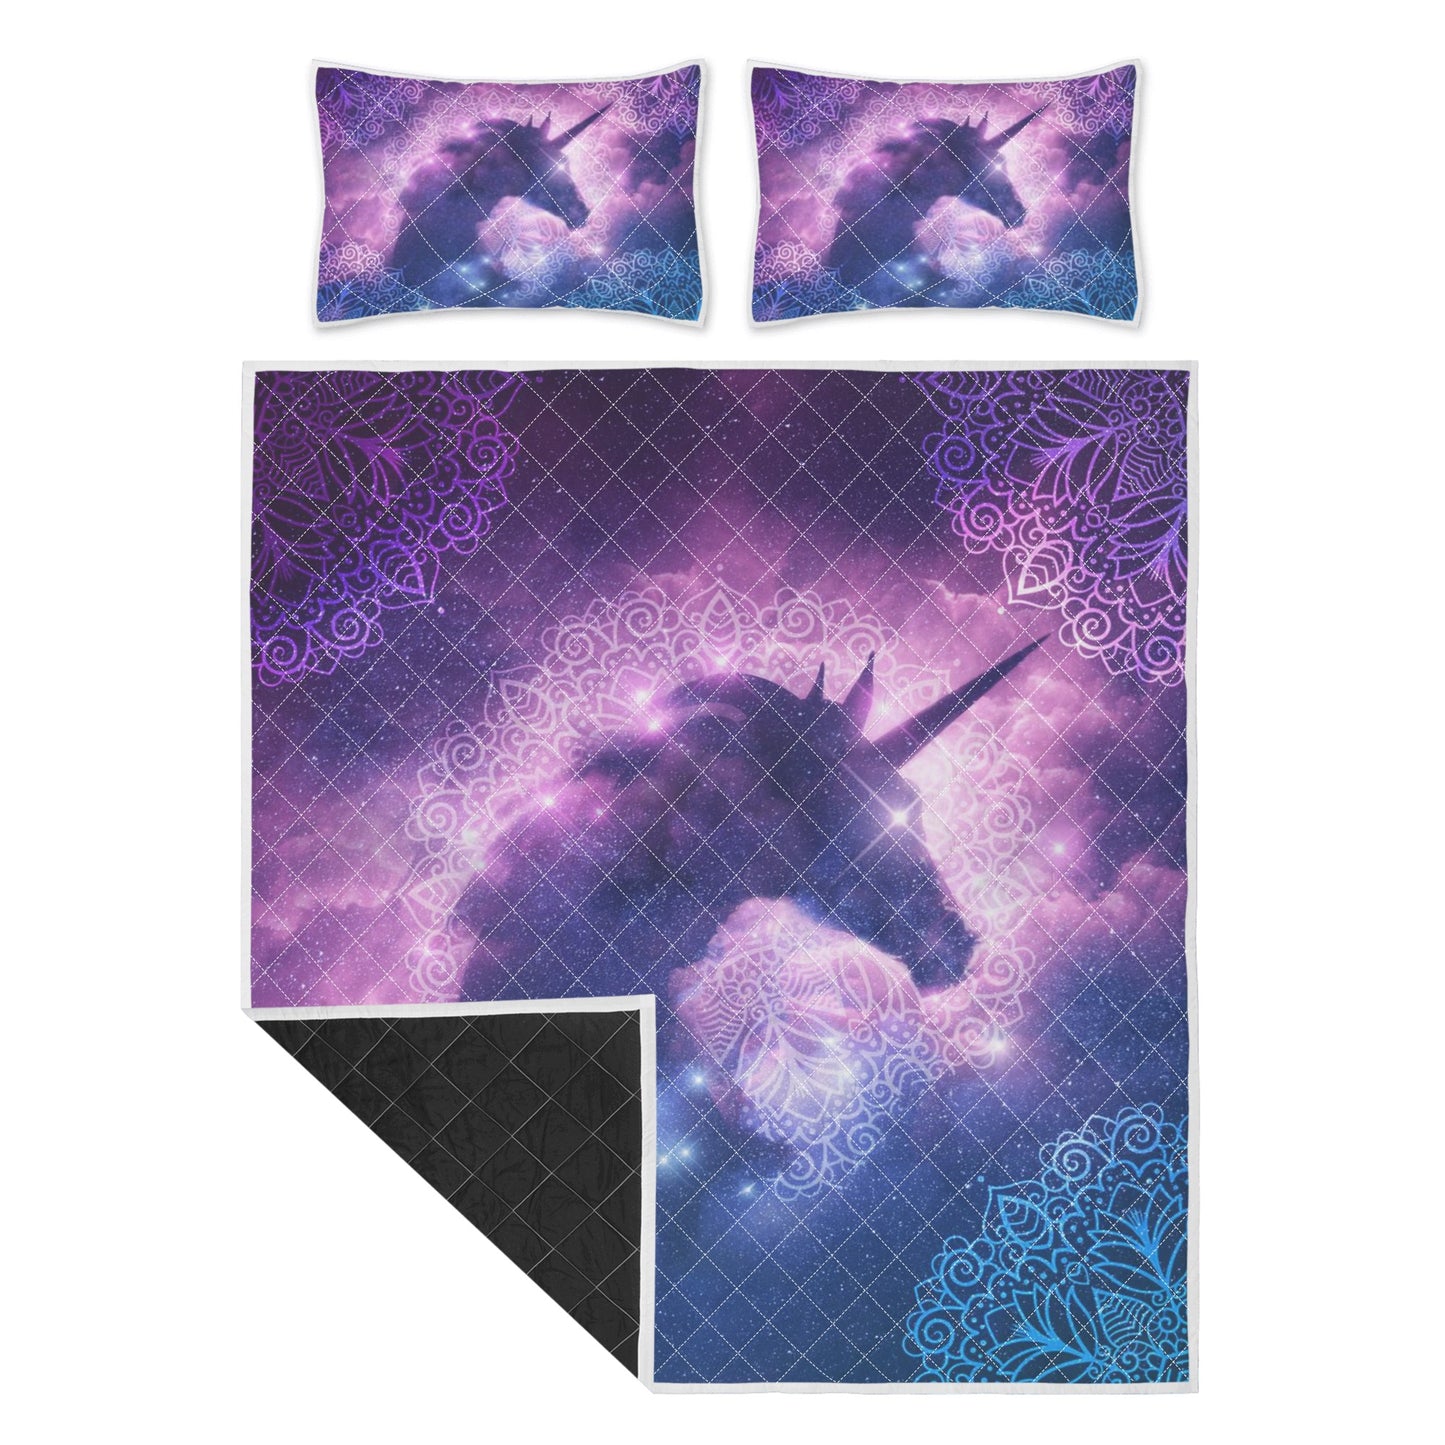 Purple Unicorn Quilt Bed Set